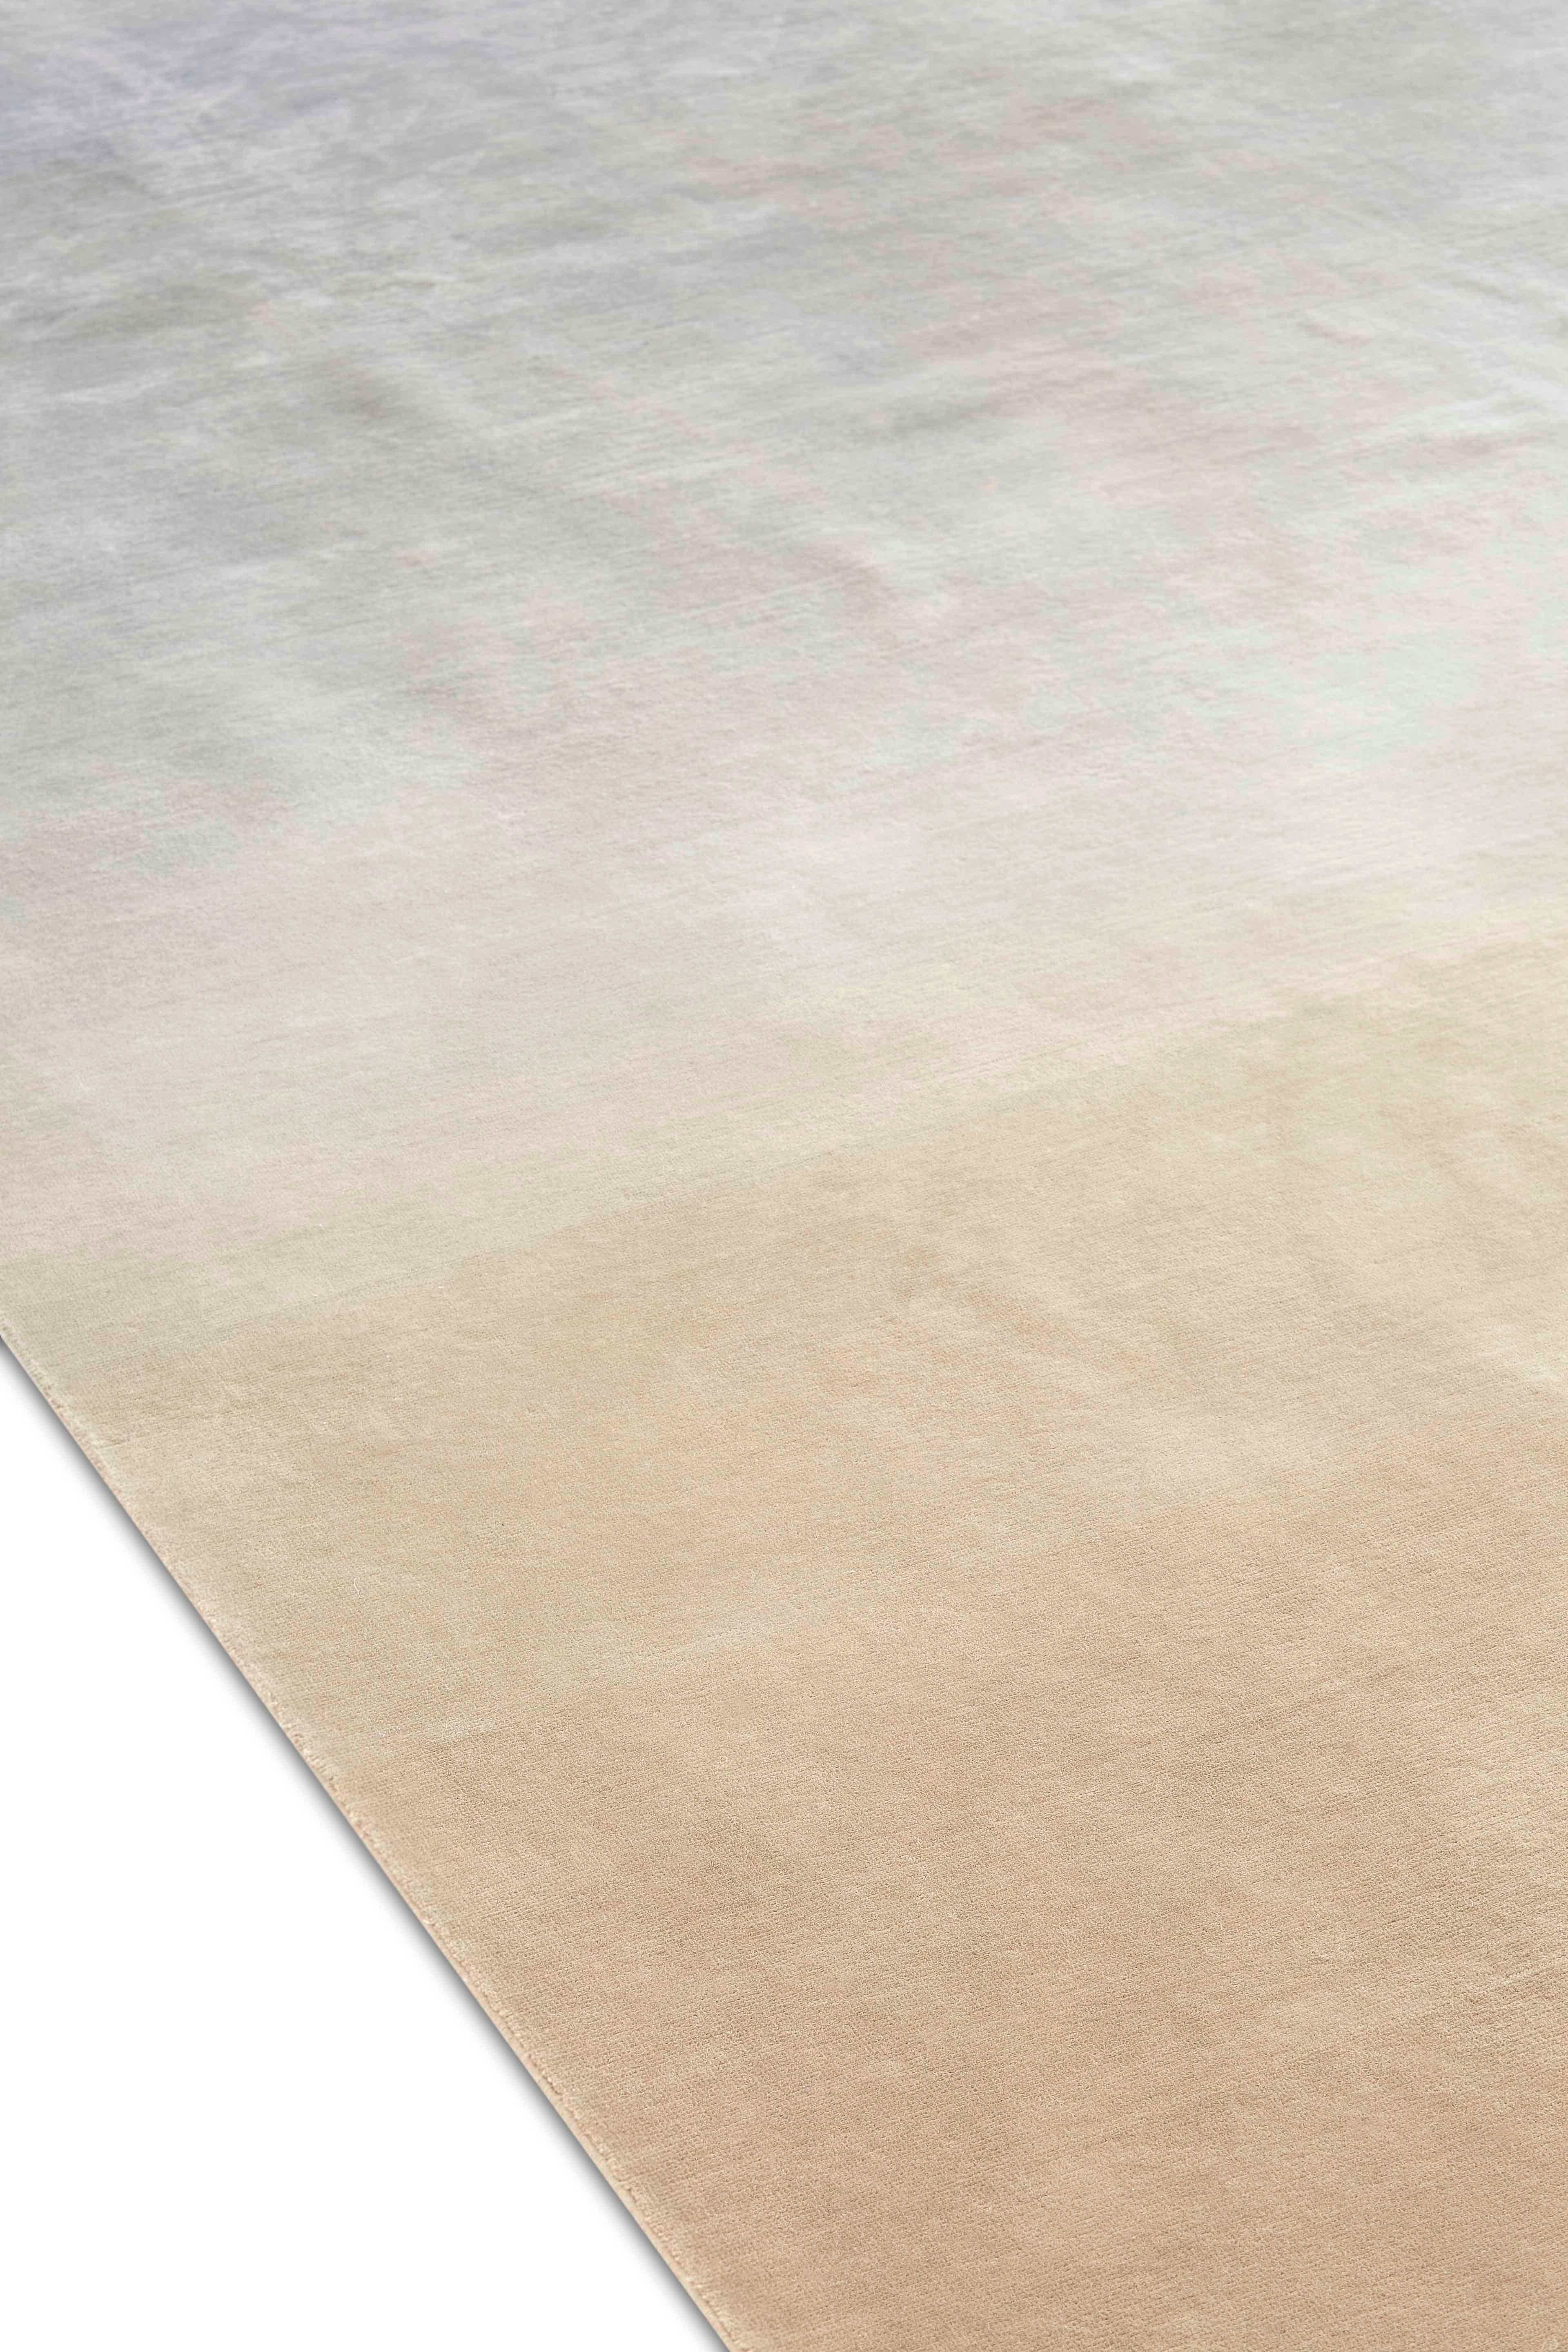 Degrade est la dernière contribution de Patricia Urquiola à la collection de tapis noués à la main de GAN. Sobres et élégants, ces tapis jouent avec la couleur et les tons intermédiaires, démontrant le savoir-faire qui caractérise la créatrice. Les